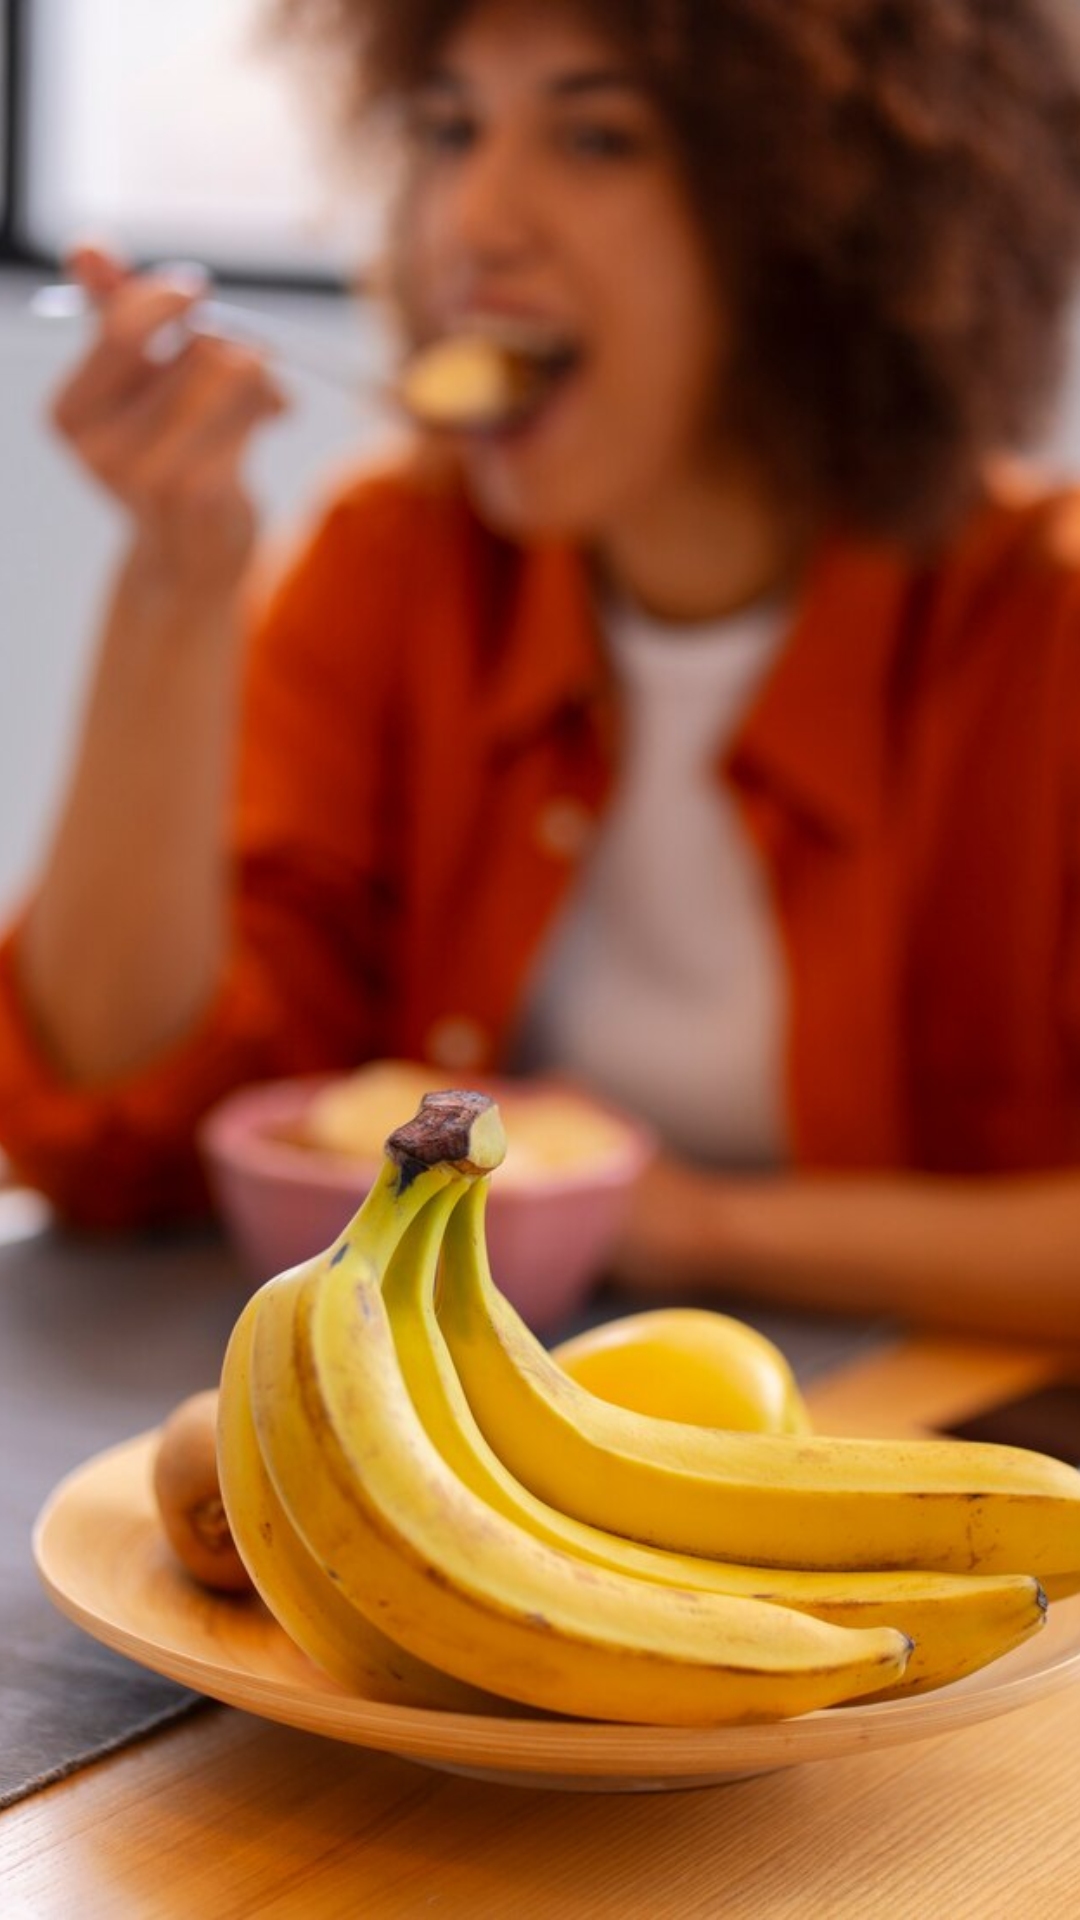 नाश्ते में केला खाने से हो सकती हैं ये परेशानी